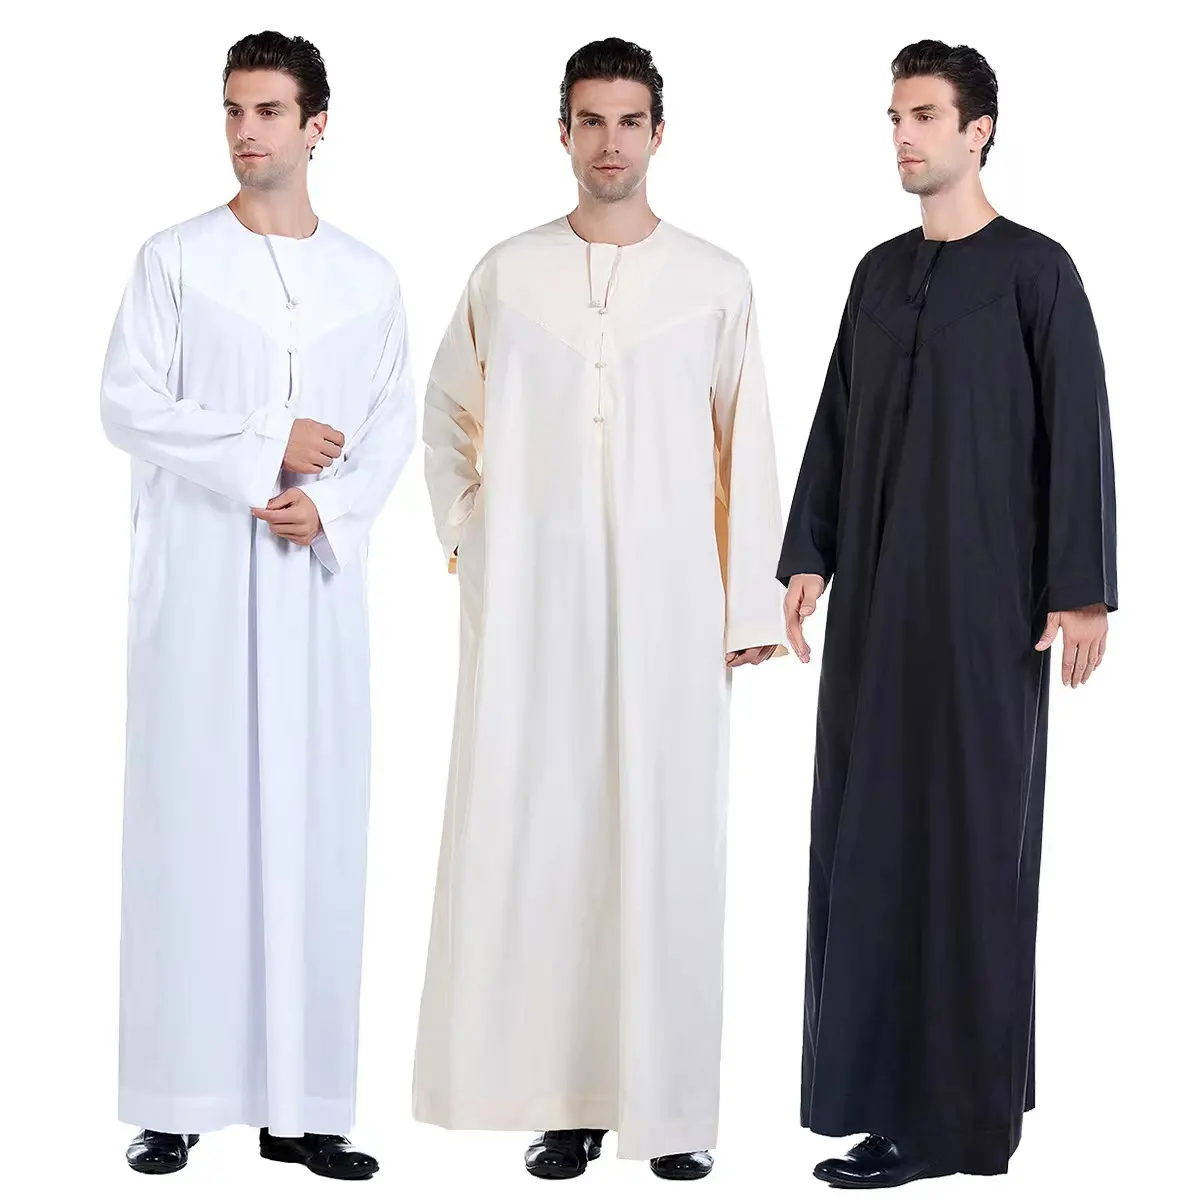 Арабская Саудовская Аравия Малайзии для мужчин платье с длинными рукавами и круглым вырезом, с застежкой на пуговицу Тауб длинная рубаха кафтан мусульманская мужская одежда